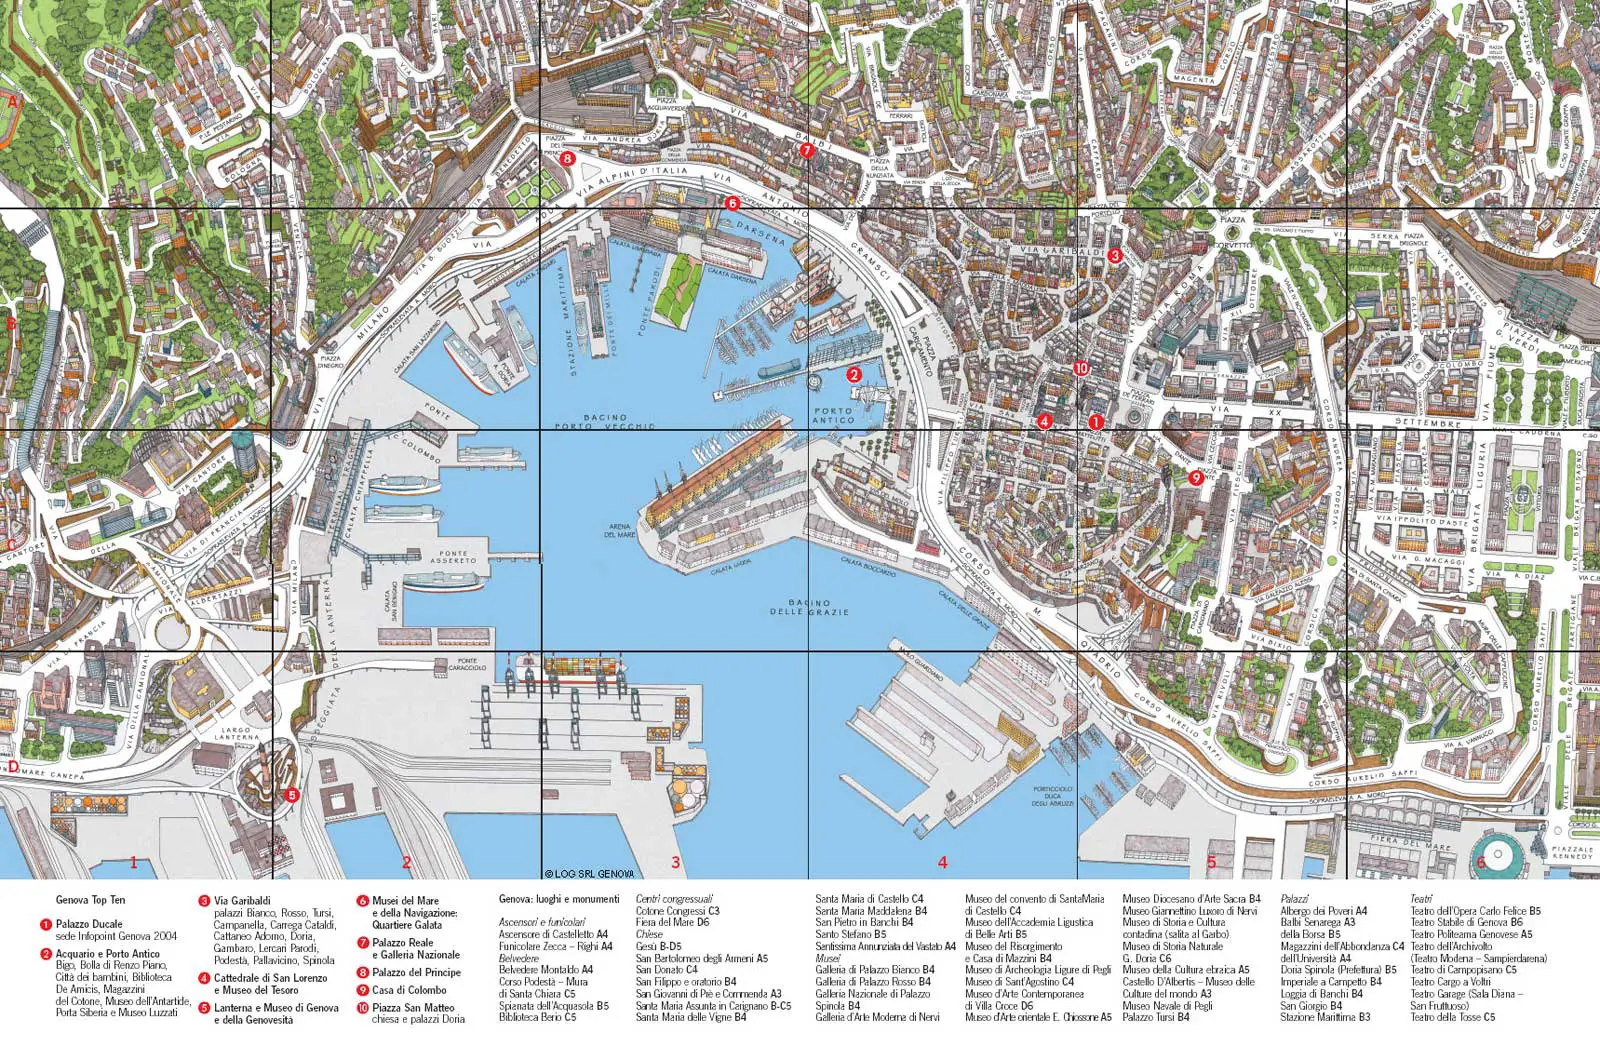 Genoa City Travel Map